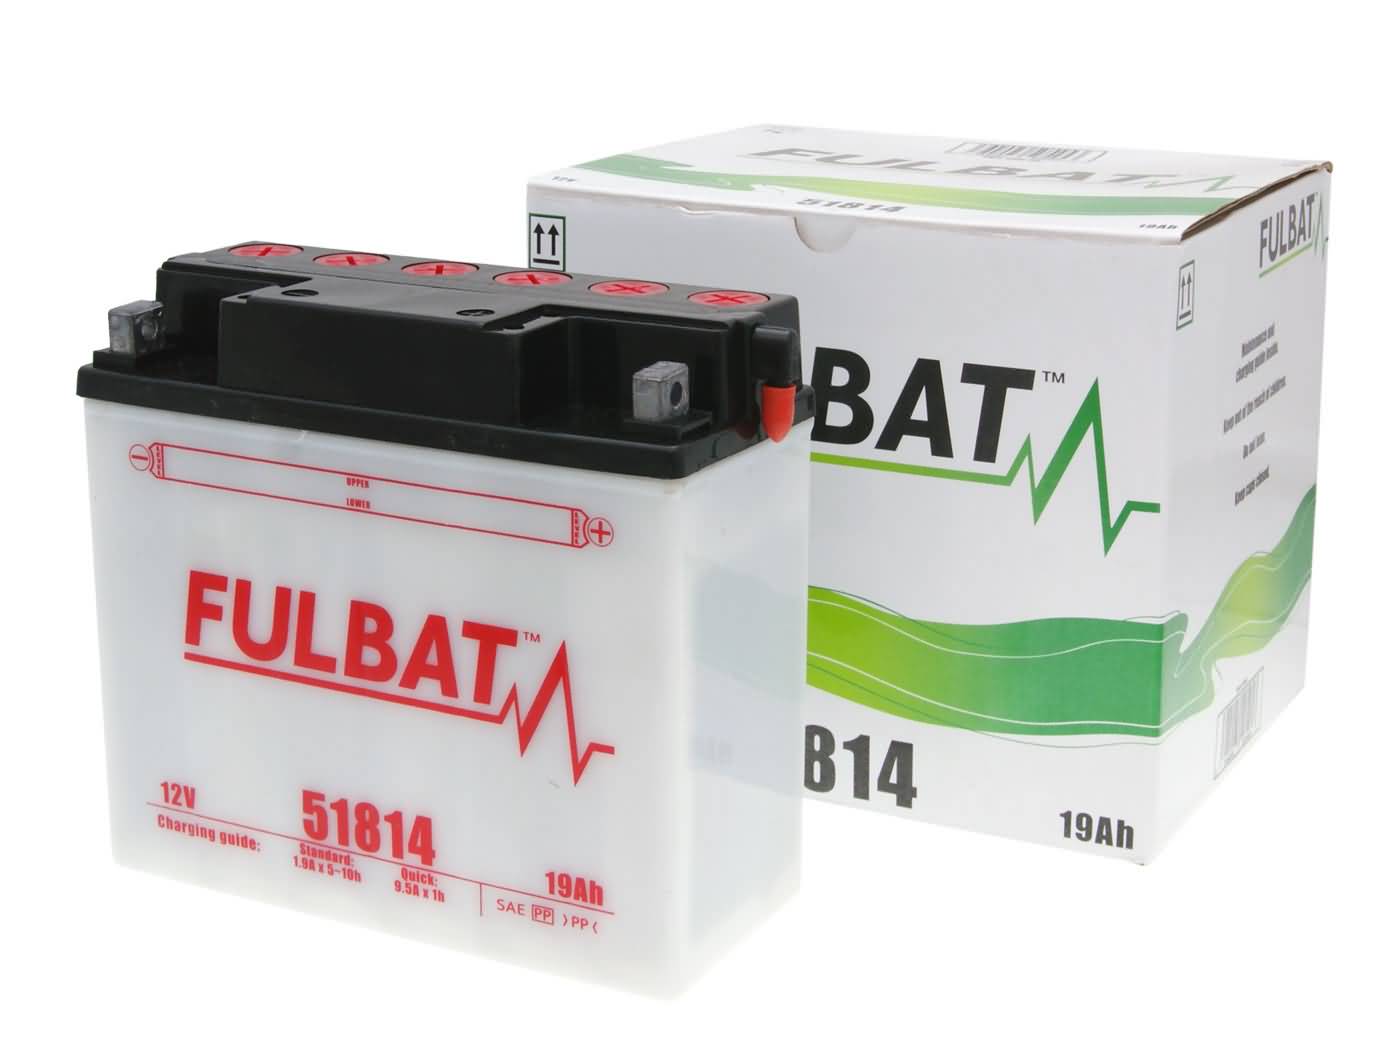 Fulbat 51814 DRY Batterie